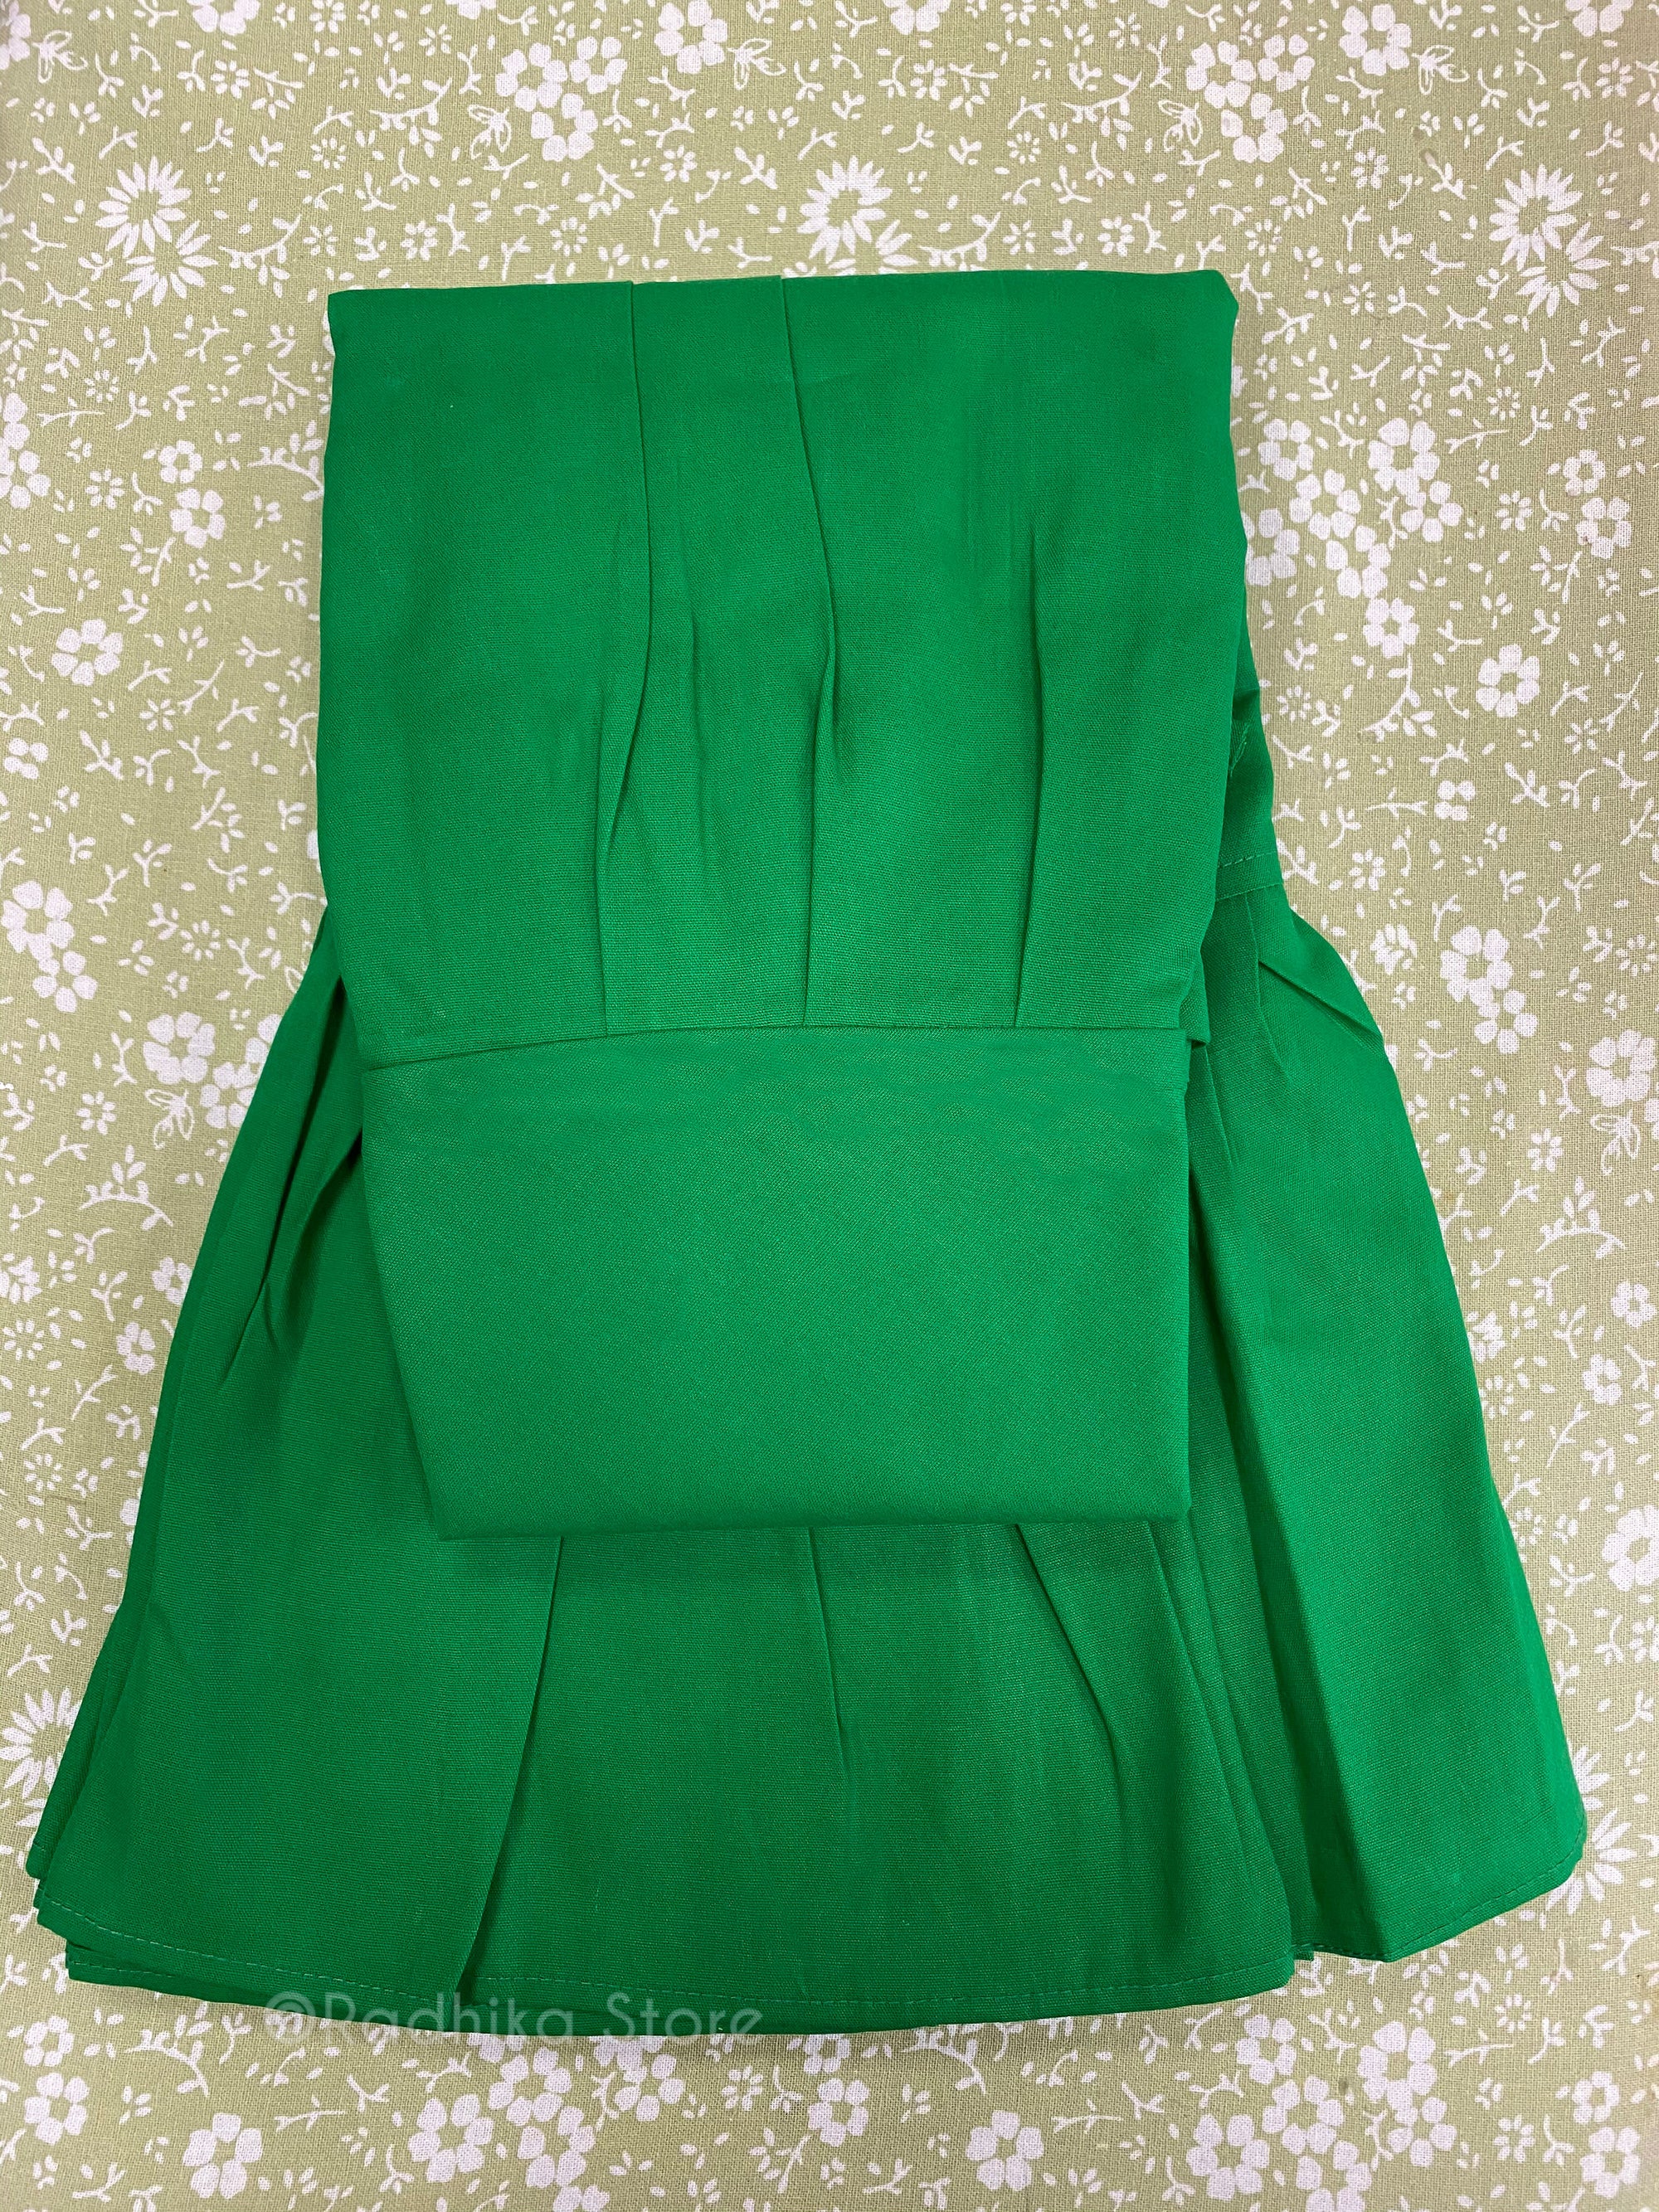 Green Petticoat/Slip - S, M, L, Xl